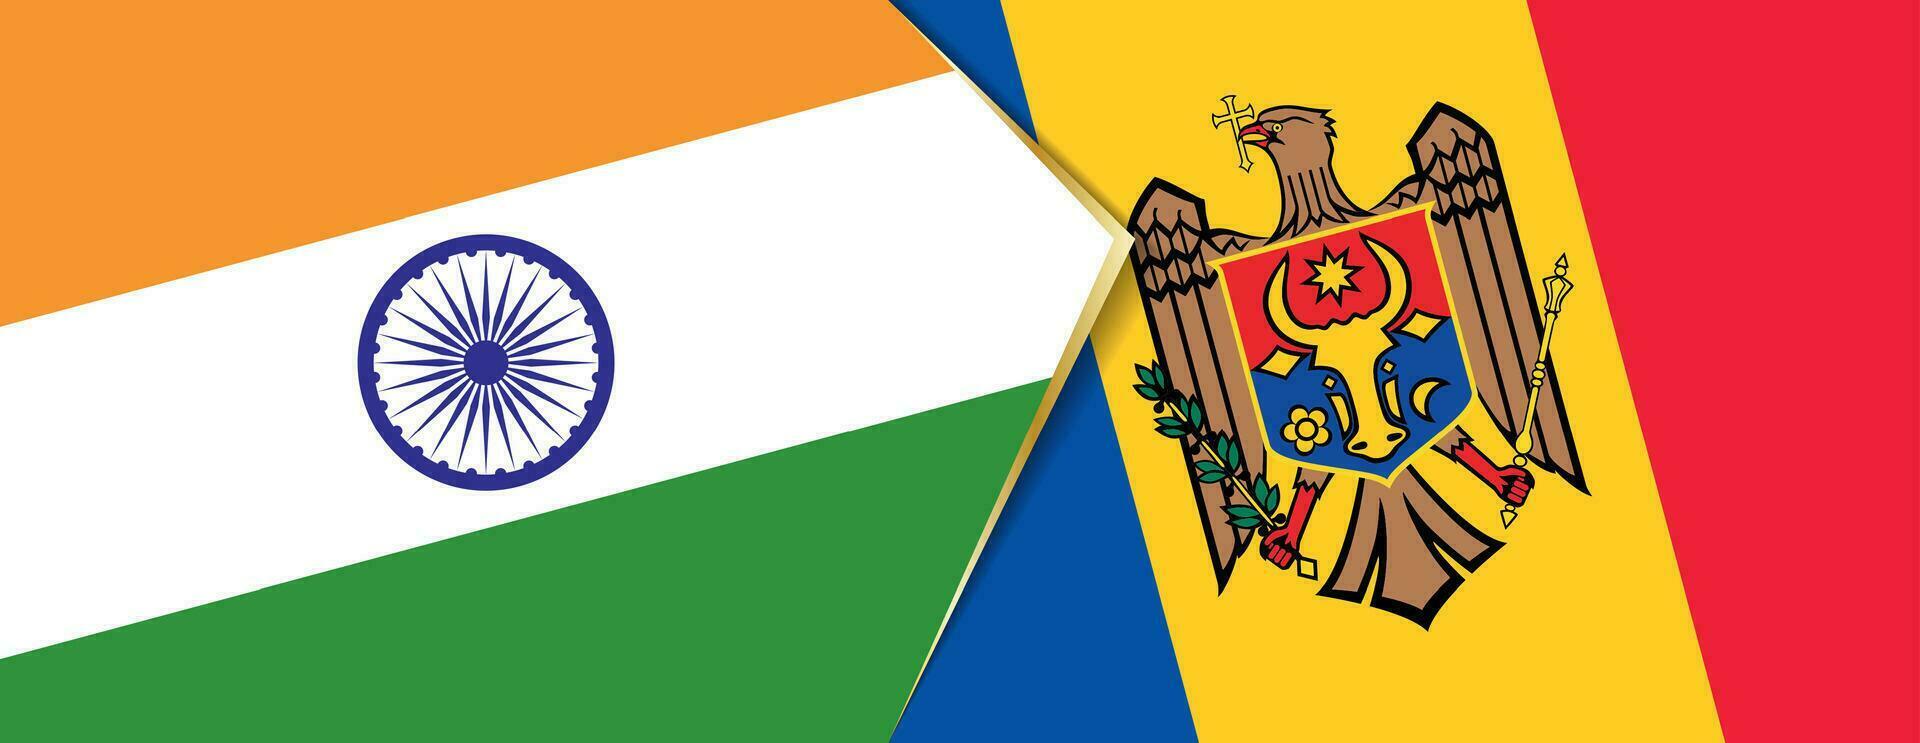 India e moldova bandiere, Due vettore bandiere.